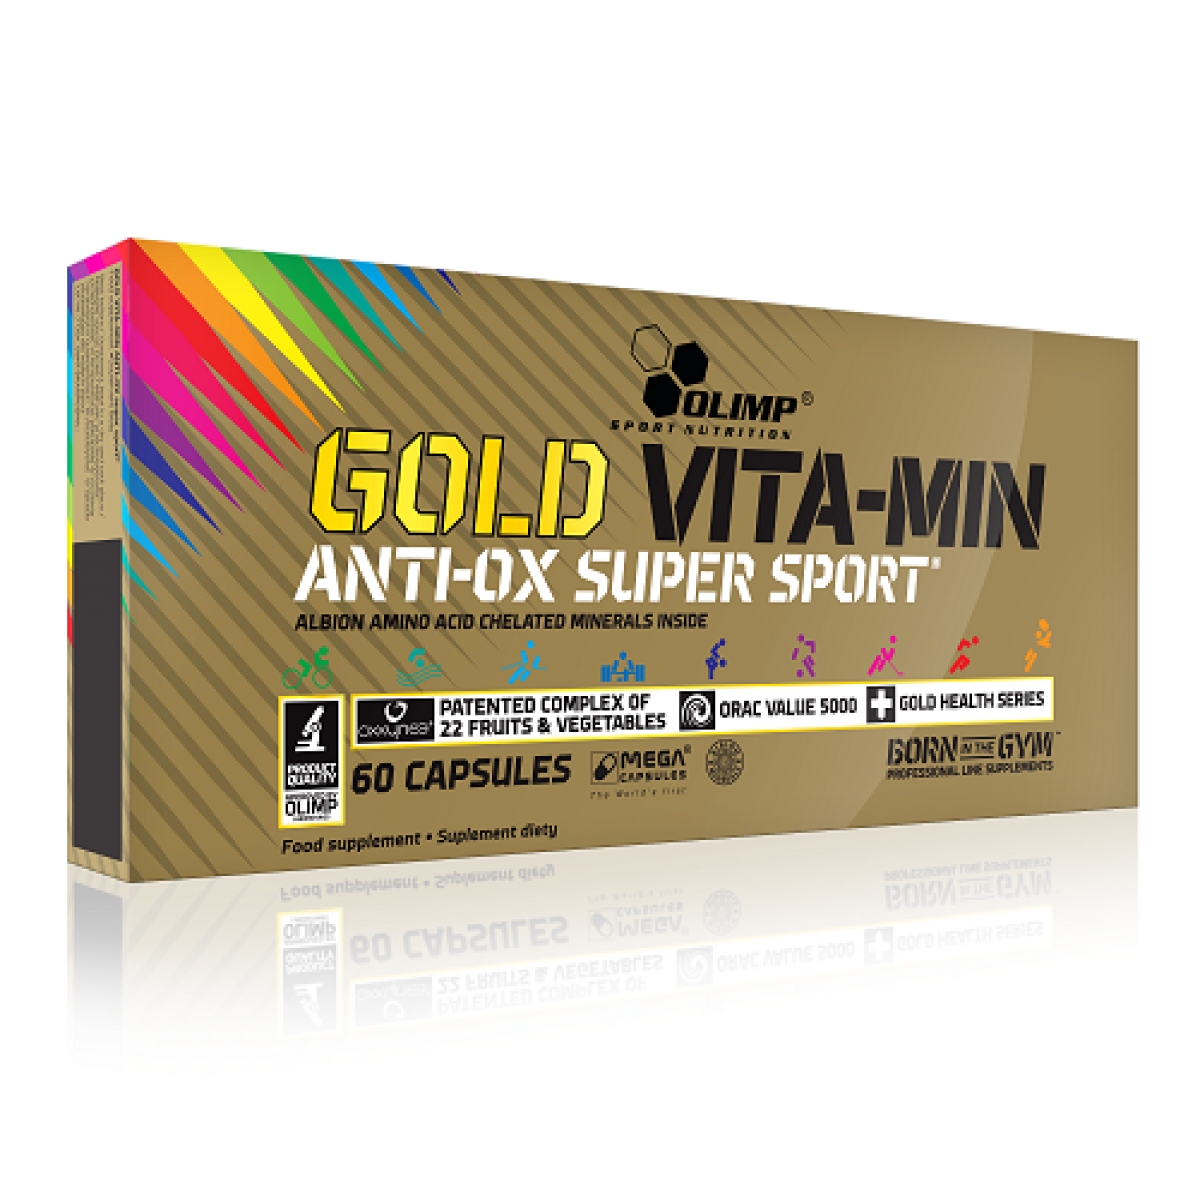 GOLD VITA-MIN ANTI-OX SUPER SPORT, 60 CAPSULES